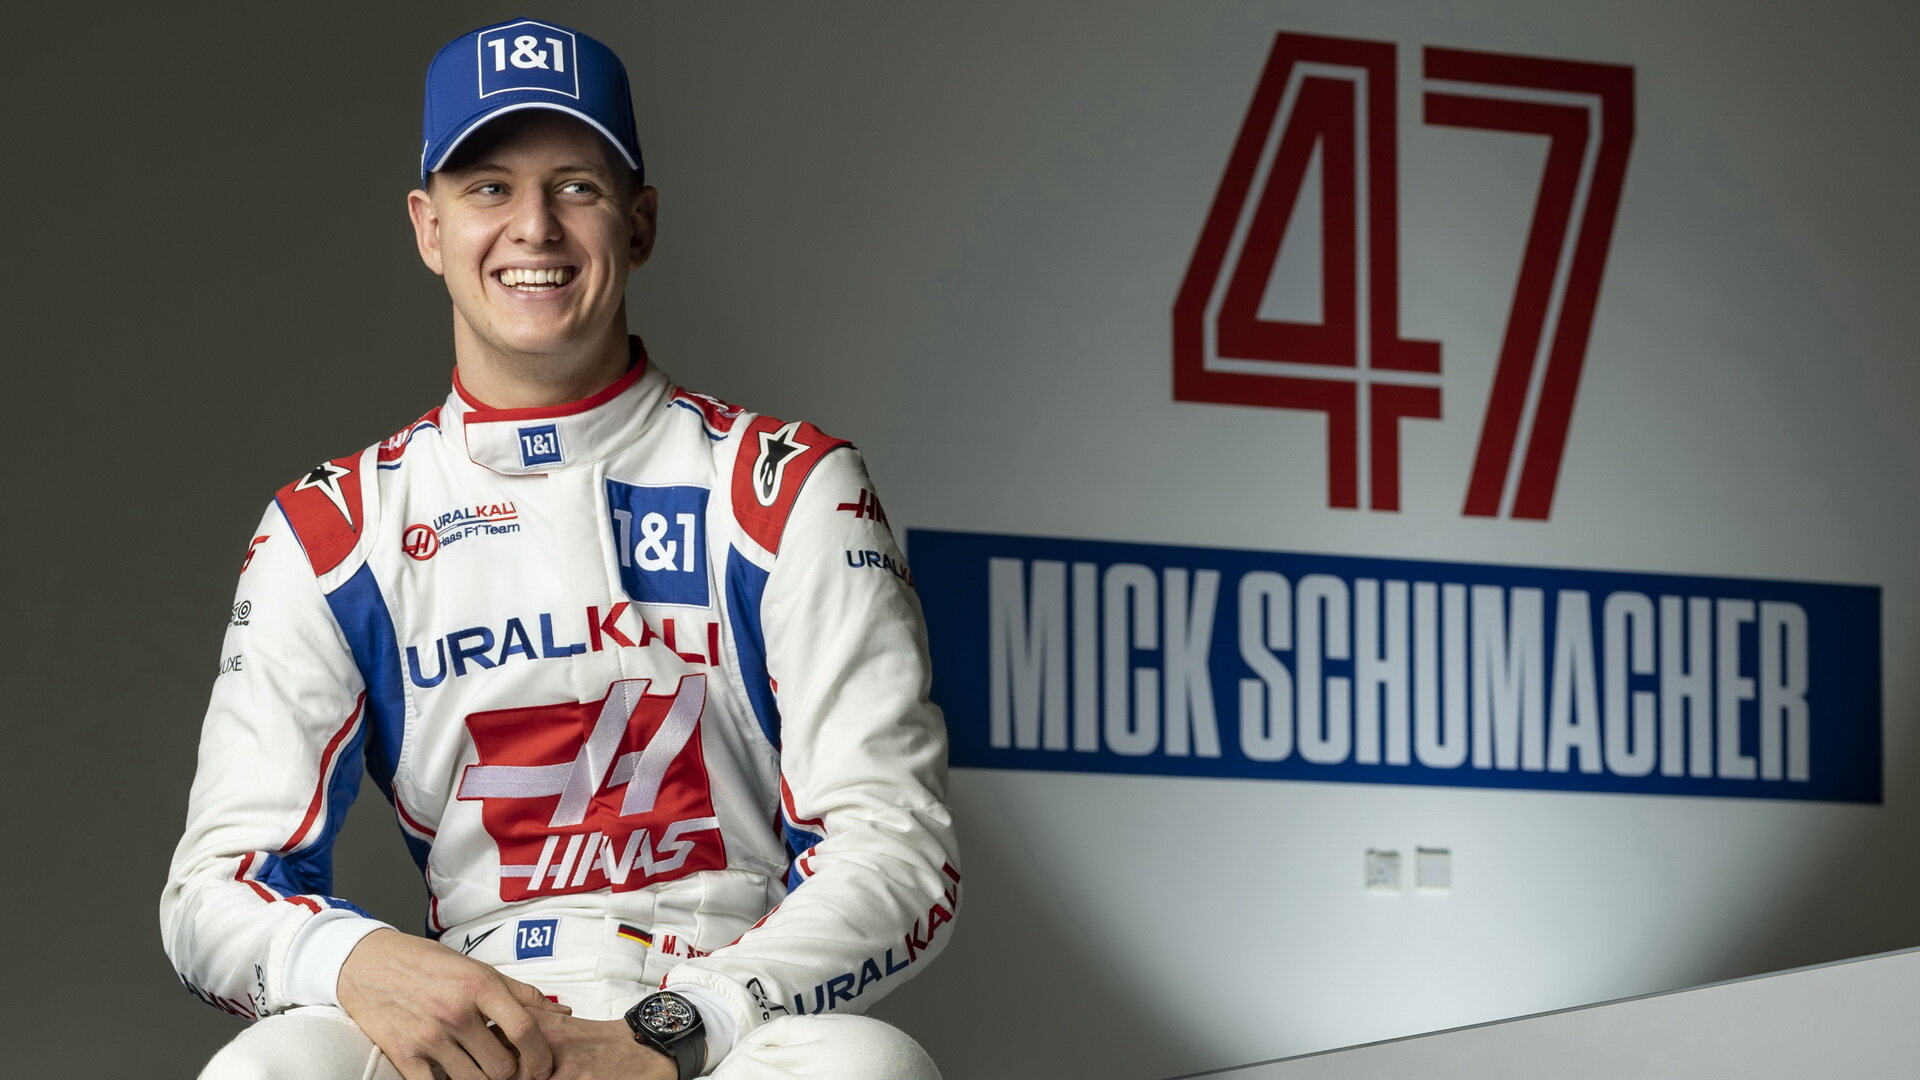 Mickovi Schumacherovi se v F1 nedaří navázat na kariéru svého slavného otce